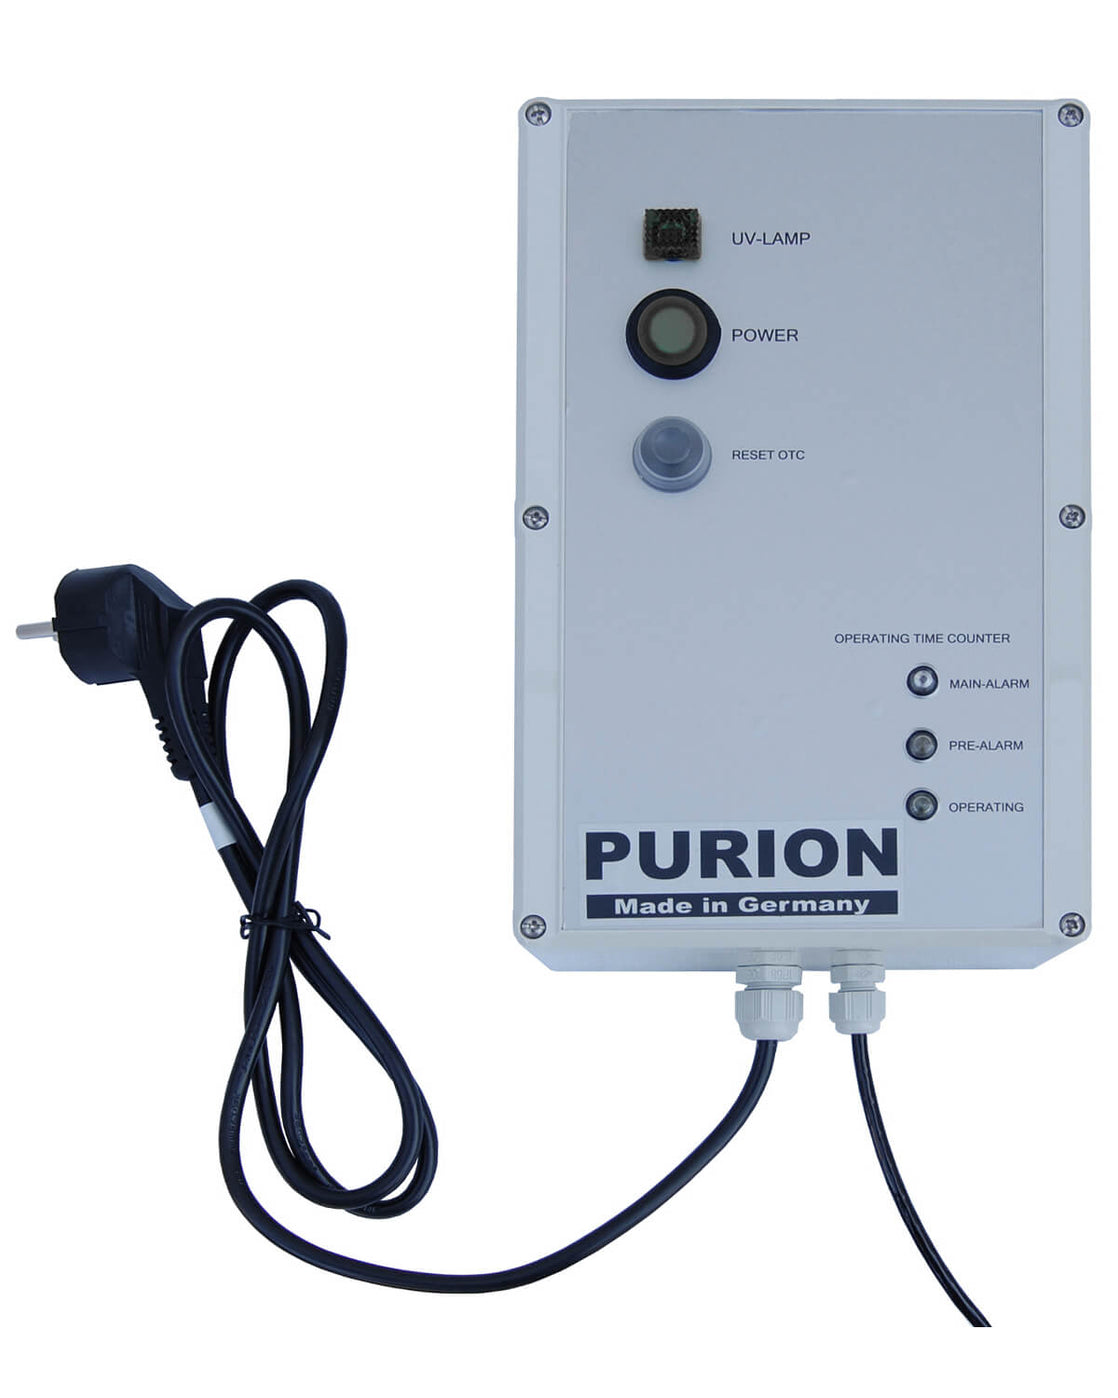 PURION 2500 Pro, ein Produkt der PURION GmbH, verfügt über die UV-C-Lichtdurchlässigkeit von Purion und verbessert so seine Desinfektionsfähigkeiten.